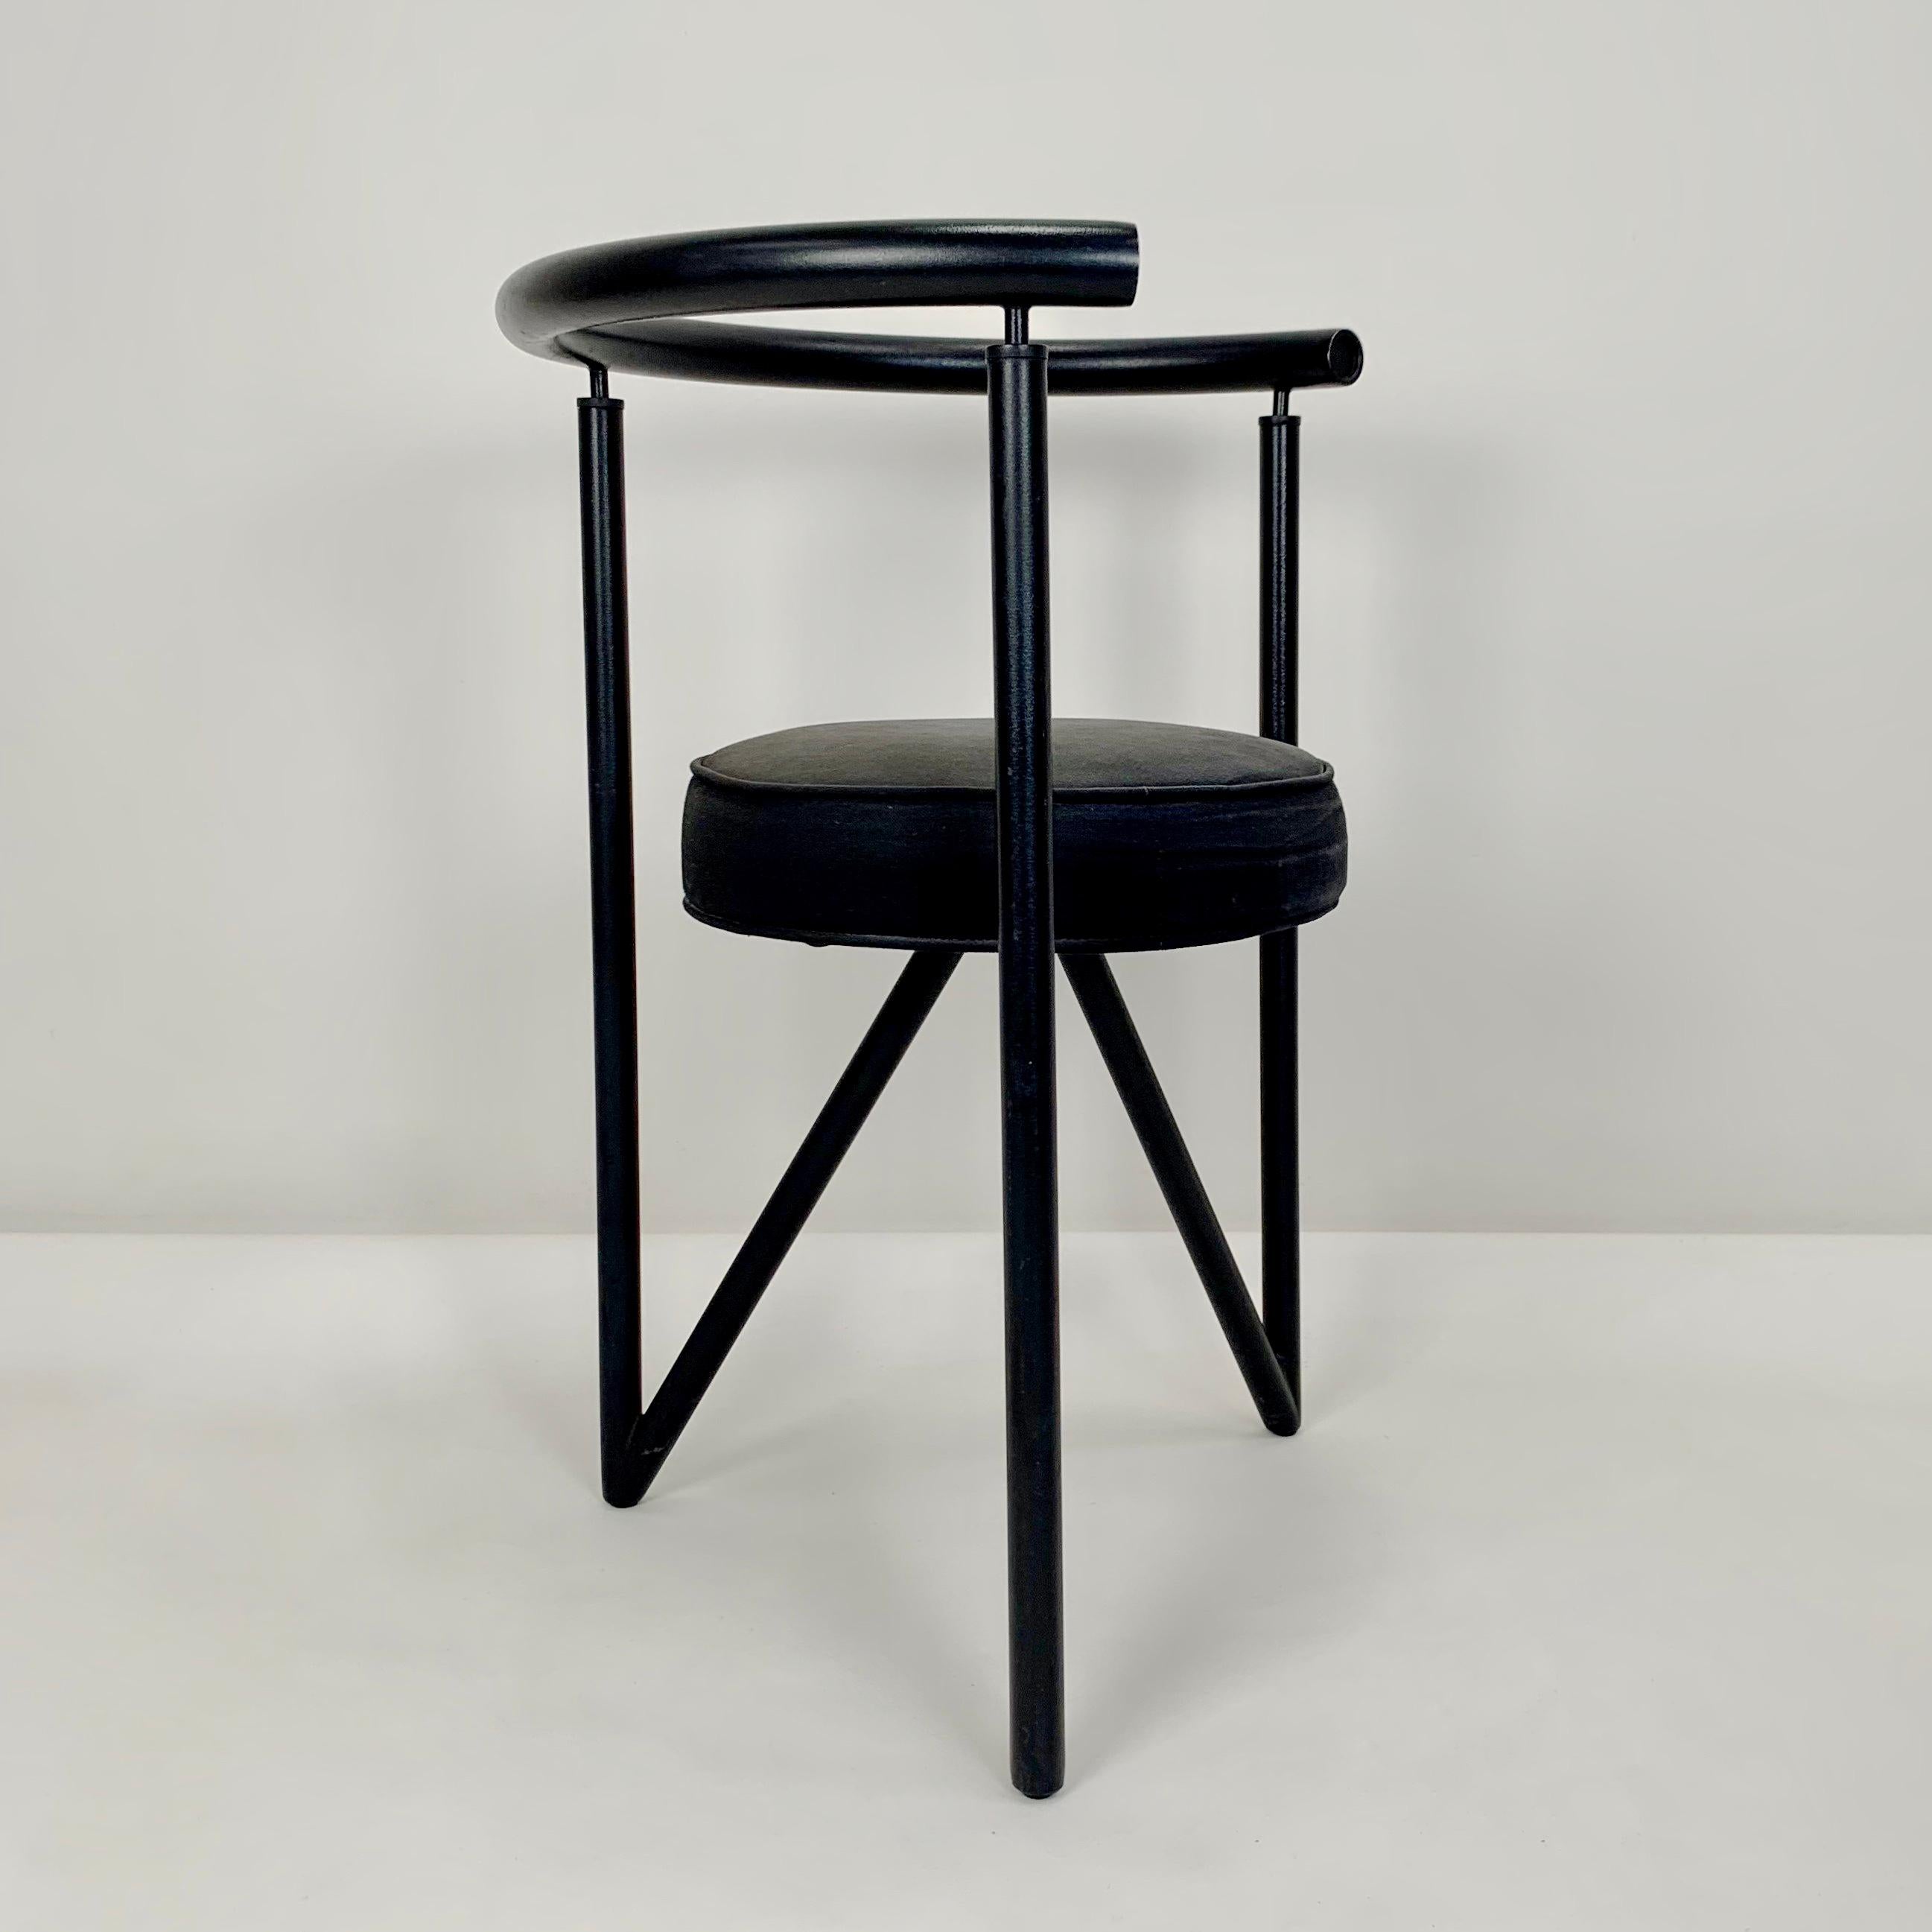 Fauteuil modèle Miss Dorn de Philippe Starck pour Disform 1982.
Structure en métal noir, assise ronde en tissu noir d'origine.
Dimensions : 70 cm H, 54 cm L, 44 cm P, hauteur d'assise : 46 cm.
État vintage d'origine.
Tous les achats sont couverts